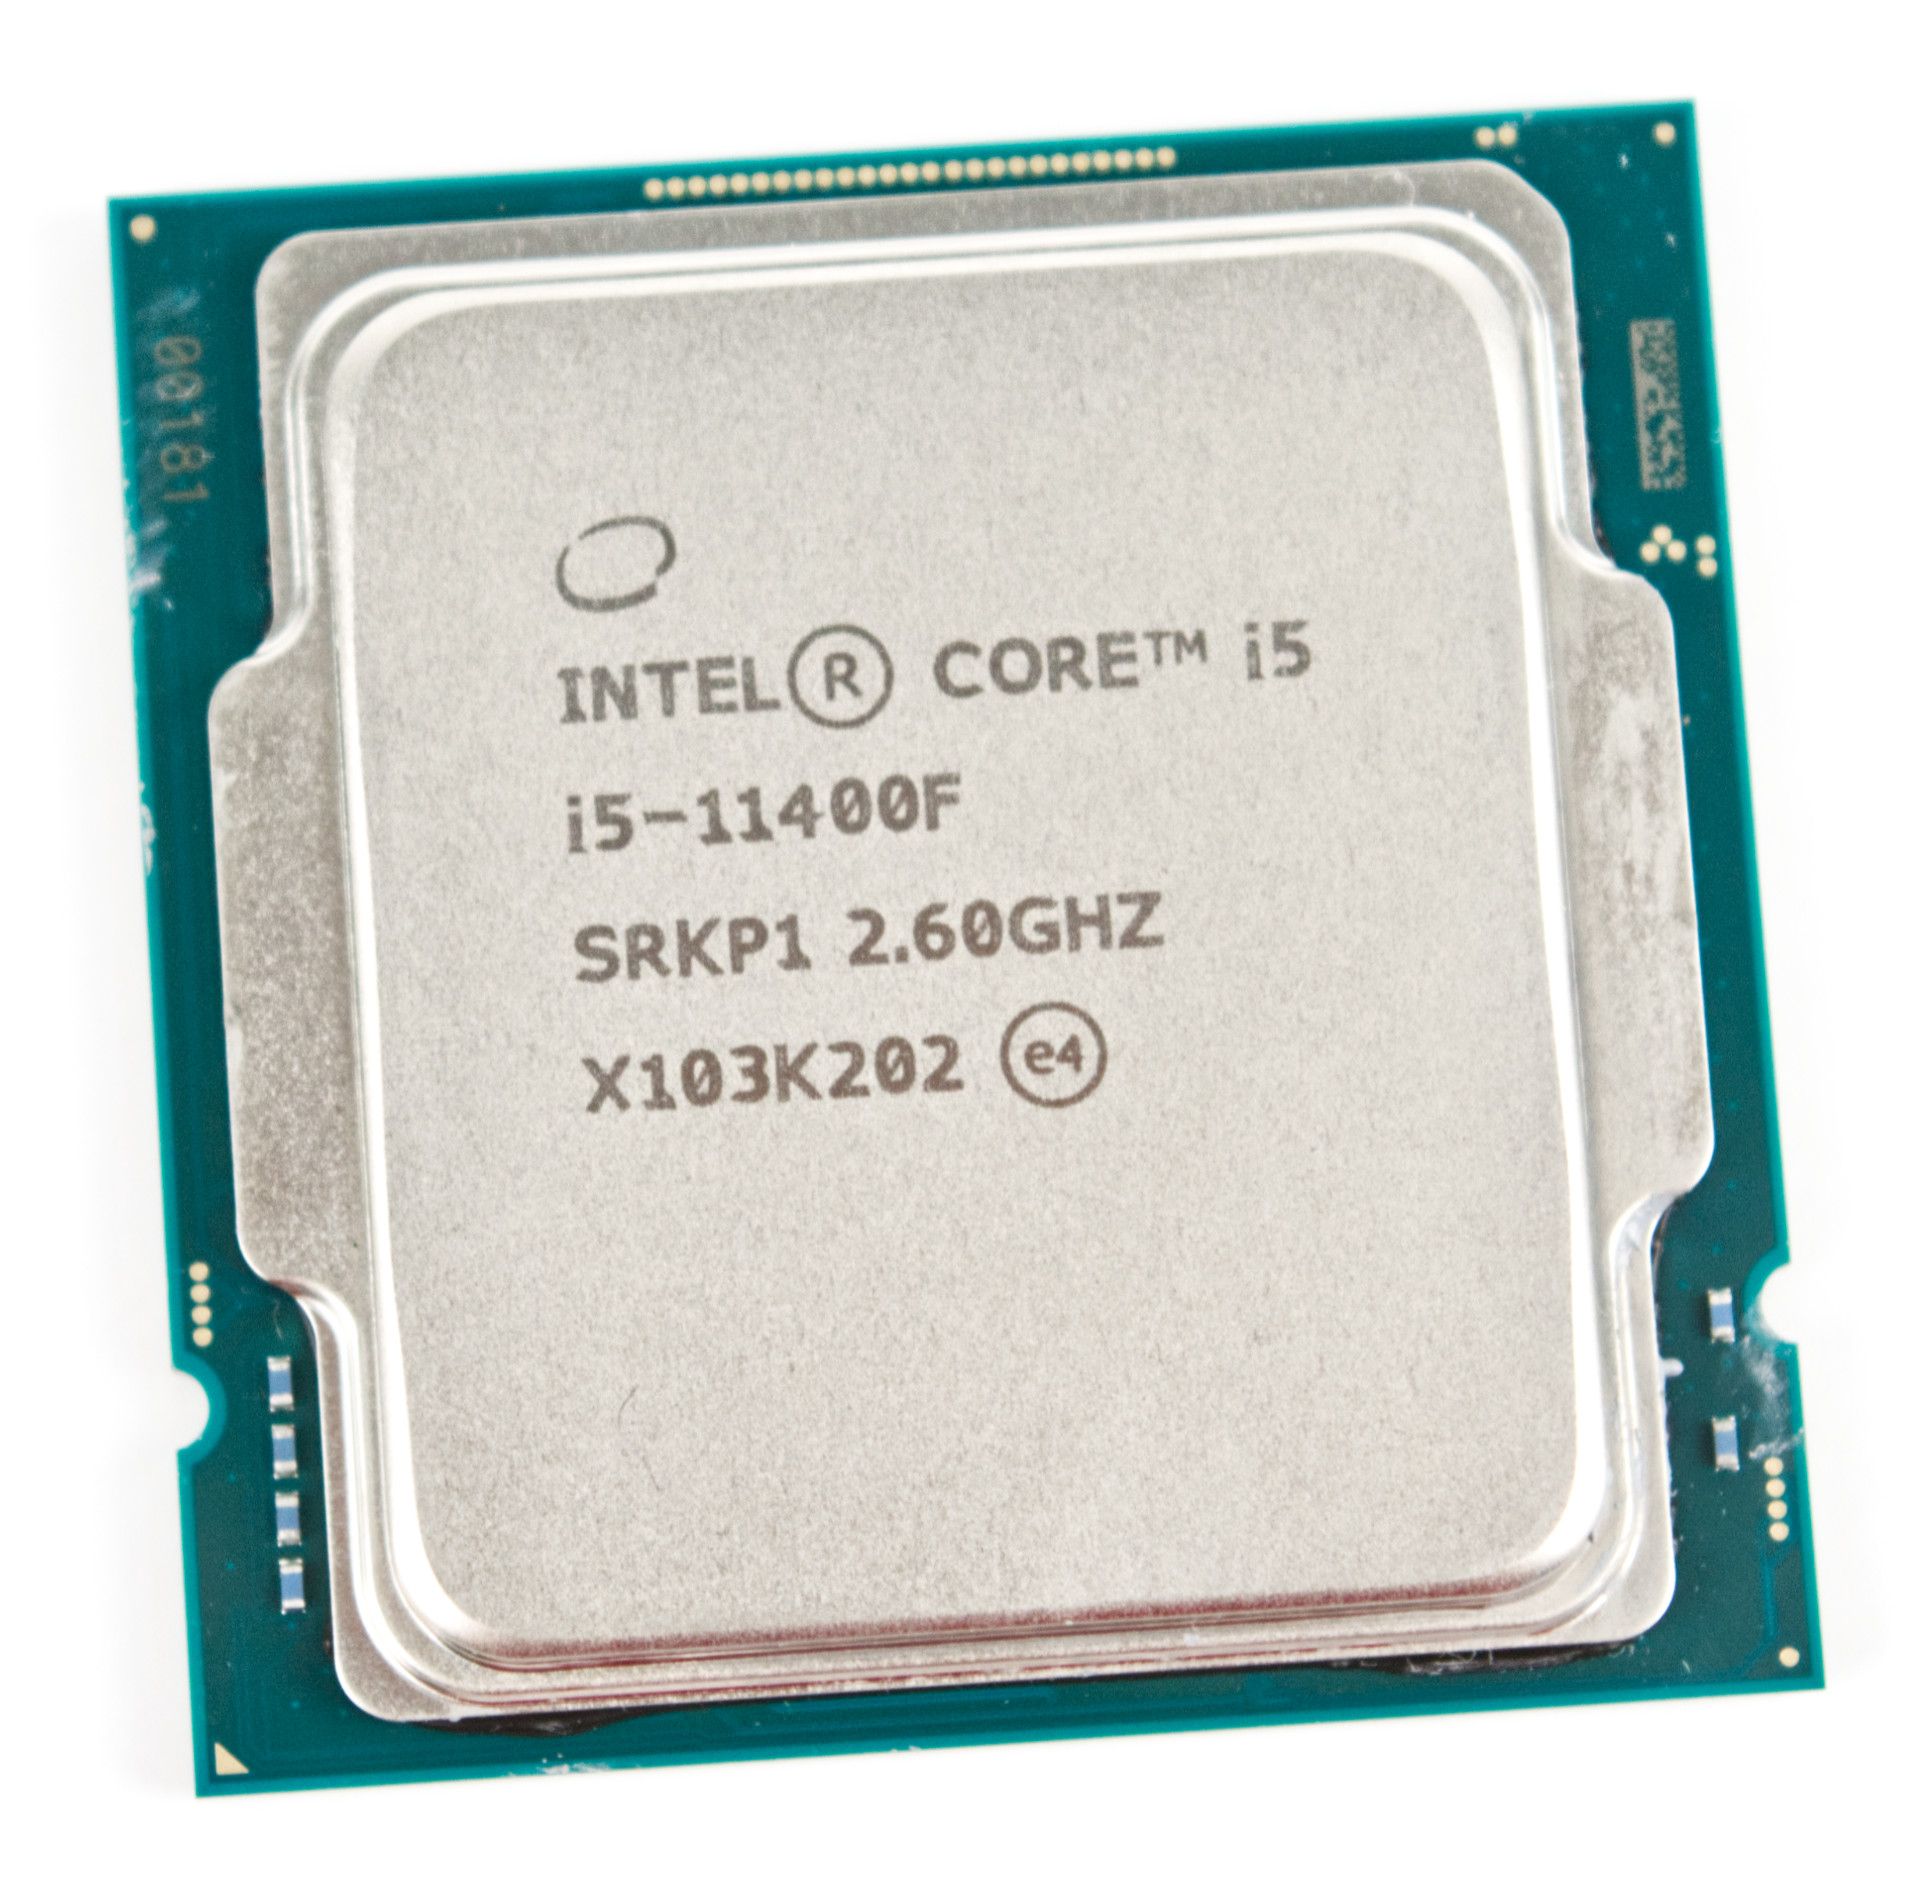 Intel core i5 12400 цены. Intel i5 11400f. Intel Core i5-11400f. Процессор Intel Core i5 11400f, LGA 1200. Core i5 11400f сокет.